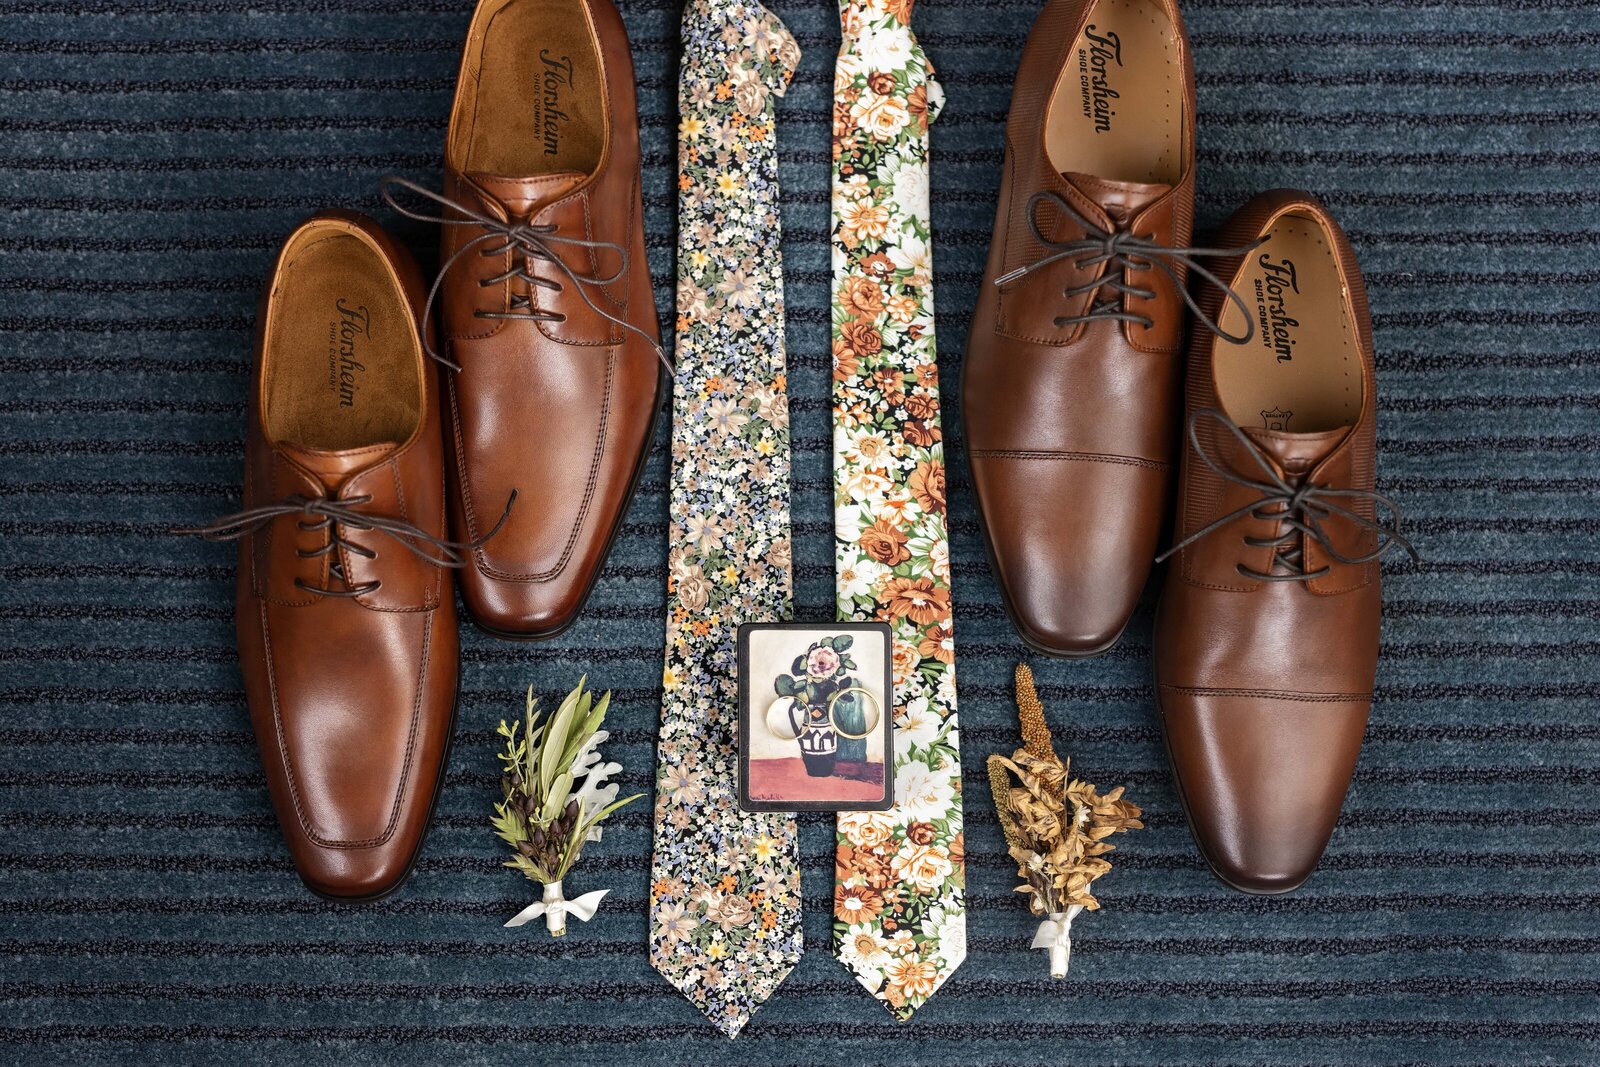 grooms-wedding-details-ties-shoes